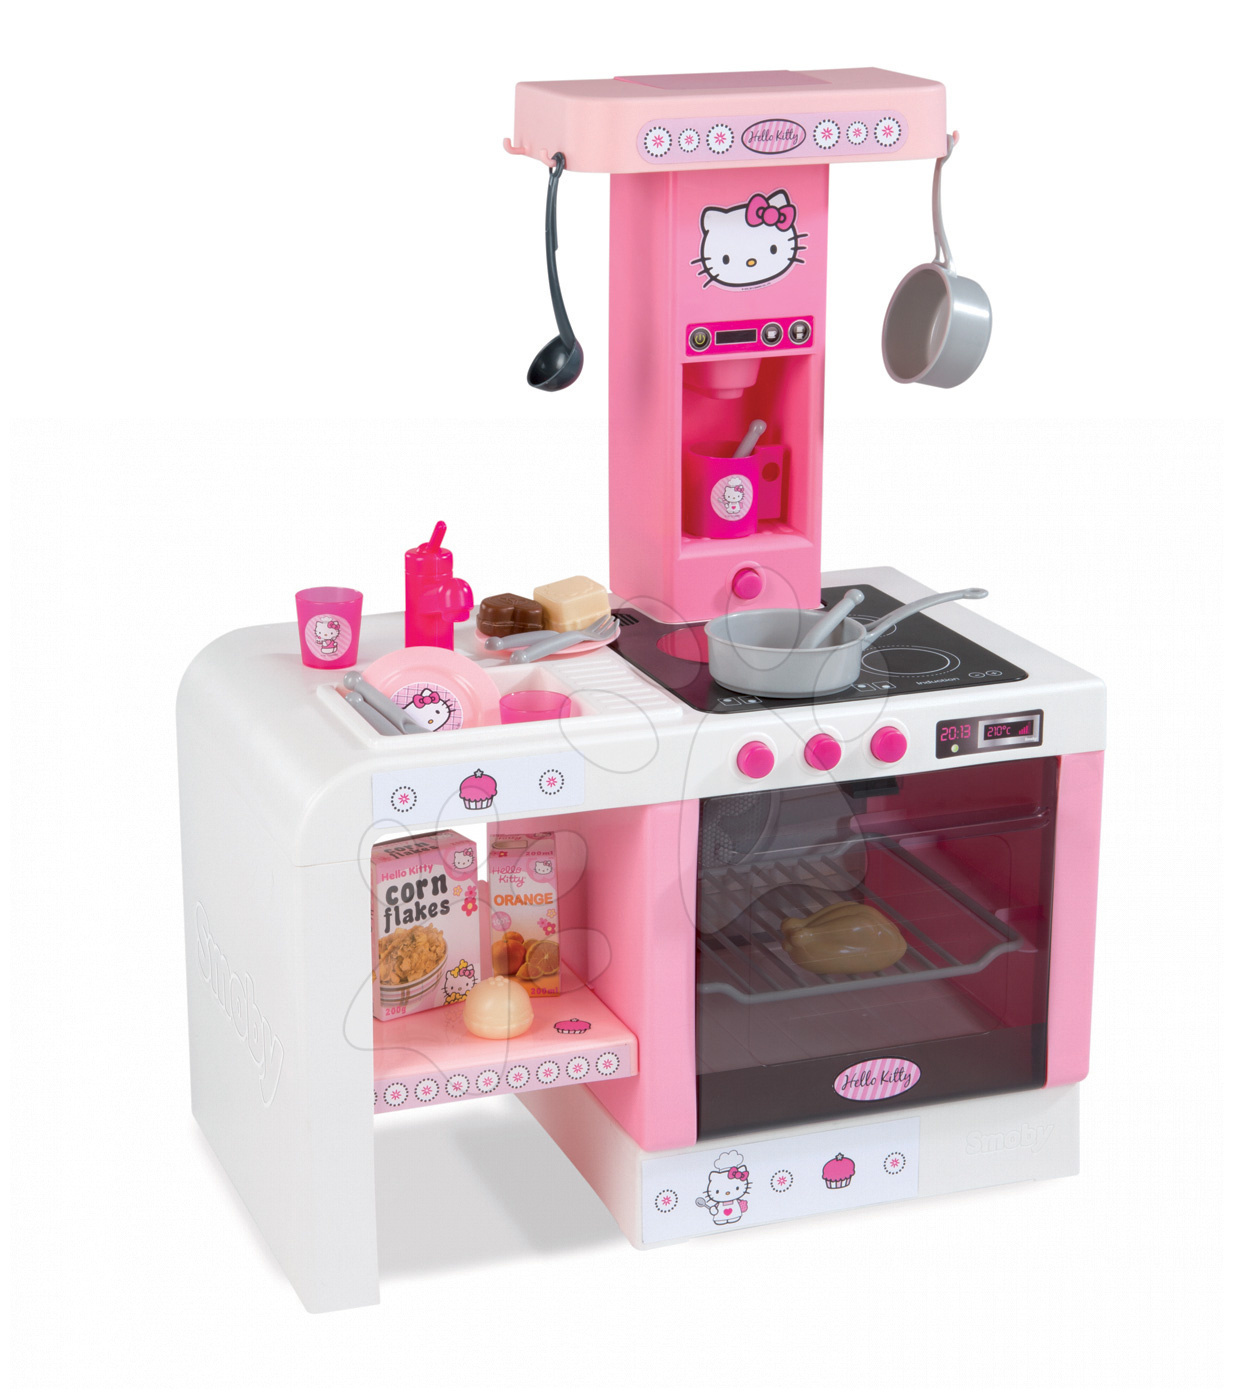 Smoby kuchynka pre deti Hello Kitty Cheftronic 24195 ružovo-biela